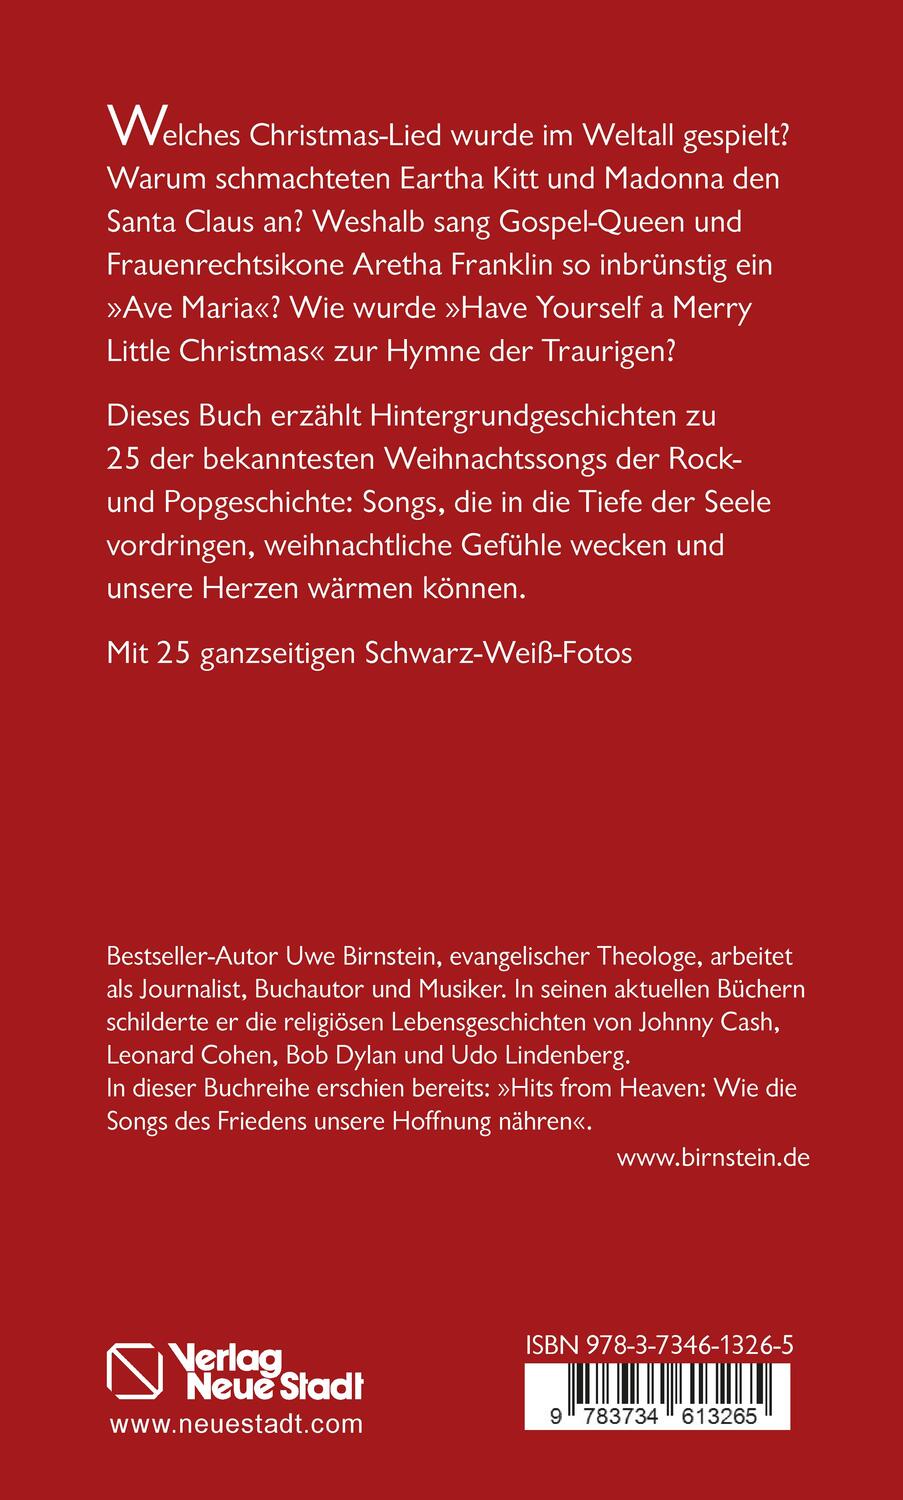 Rückseite: 9783734613265 | Hits from Heaven: CHRISTMAS-SONGS, die unser Herz erwärmen | Birnstein